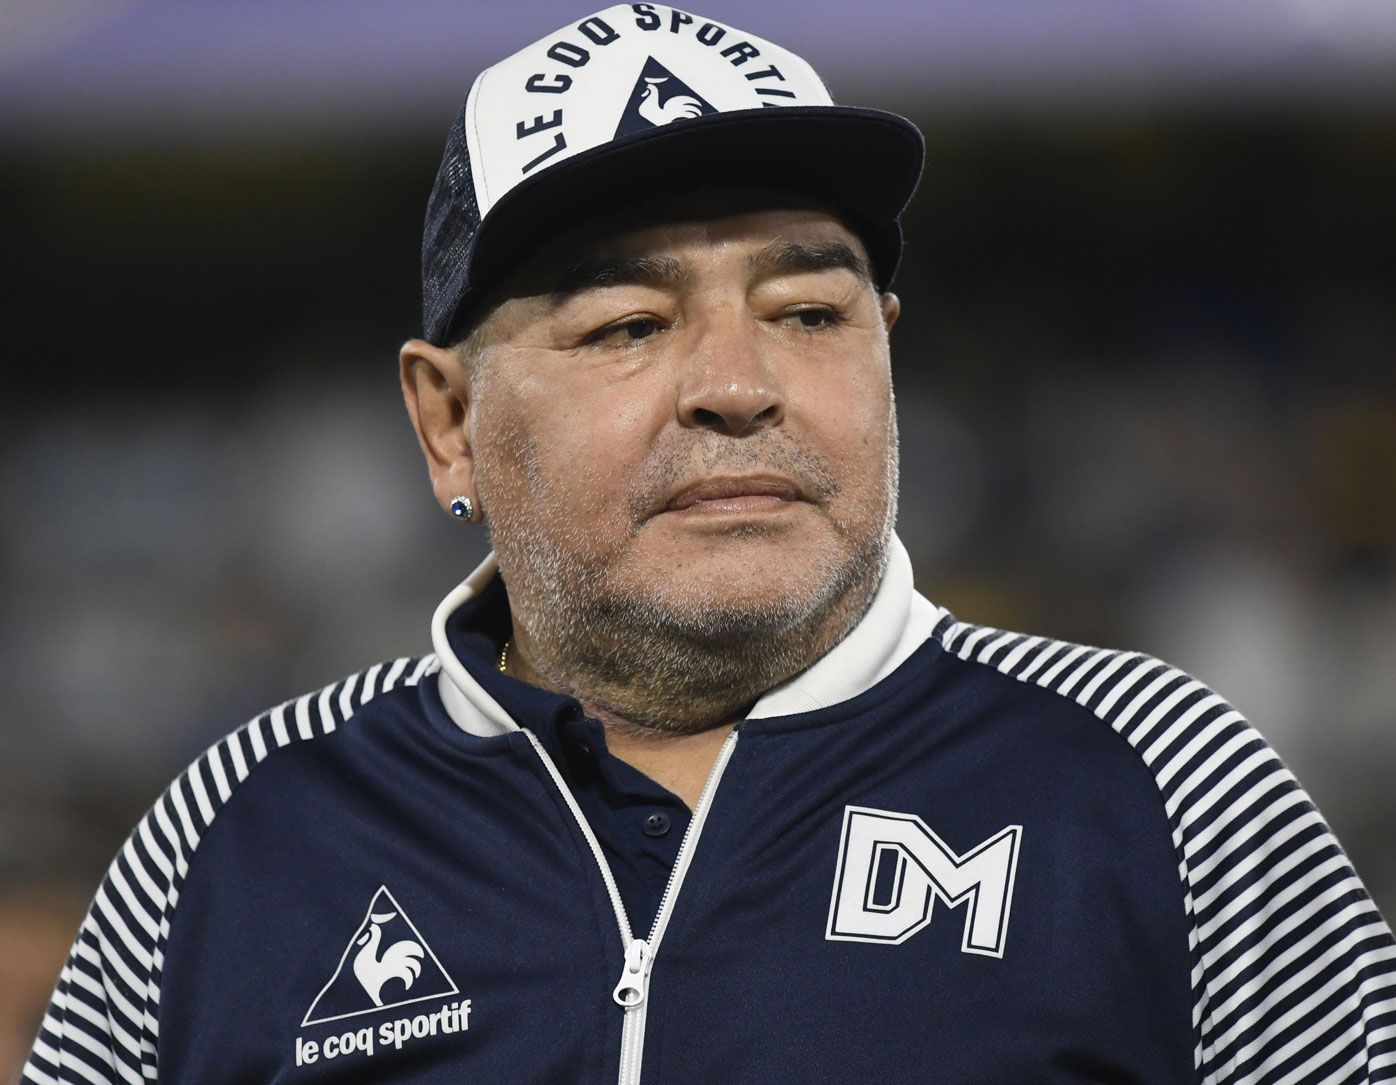 Stolen watch of Argentine football legend Diego Maradona found by Indian police